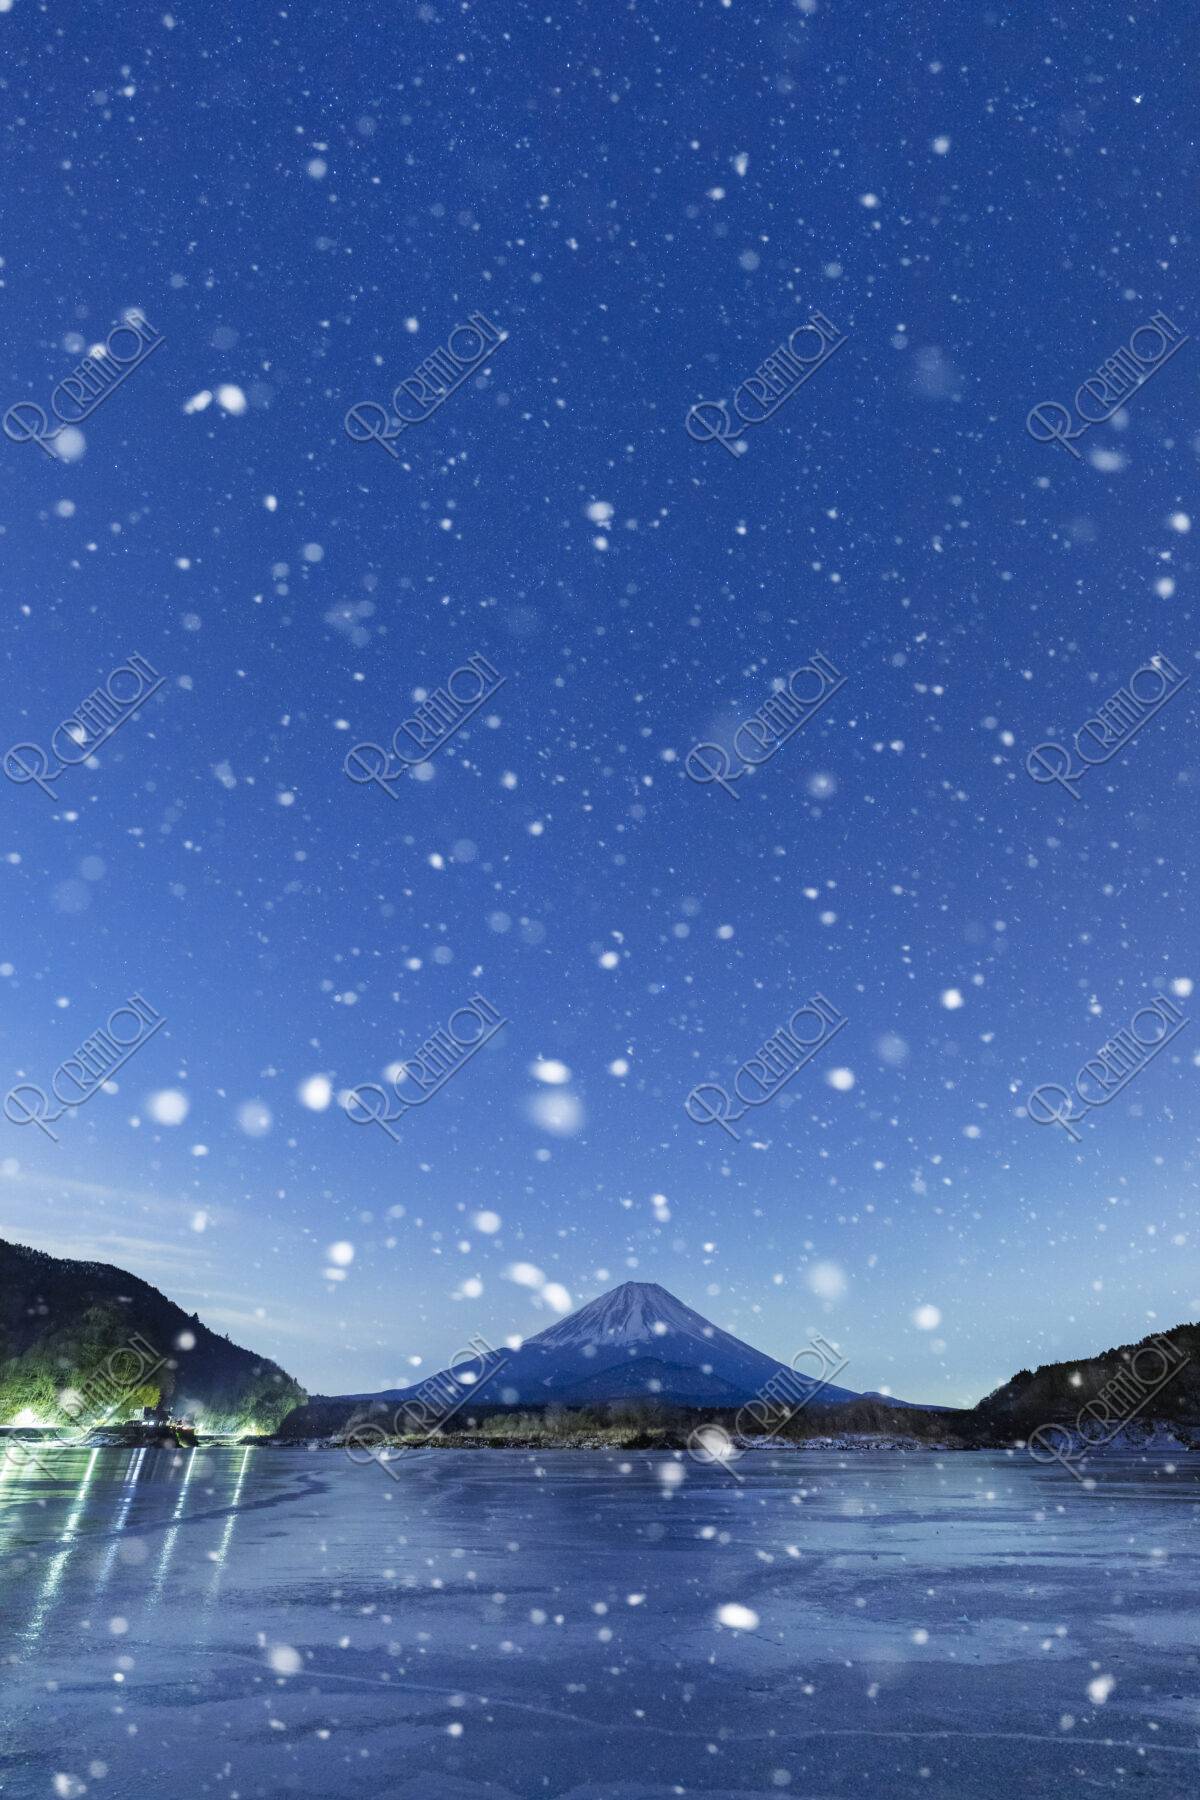 夜明けの富士山と雪